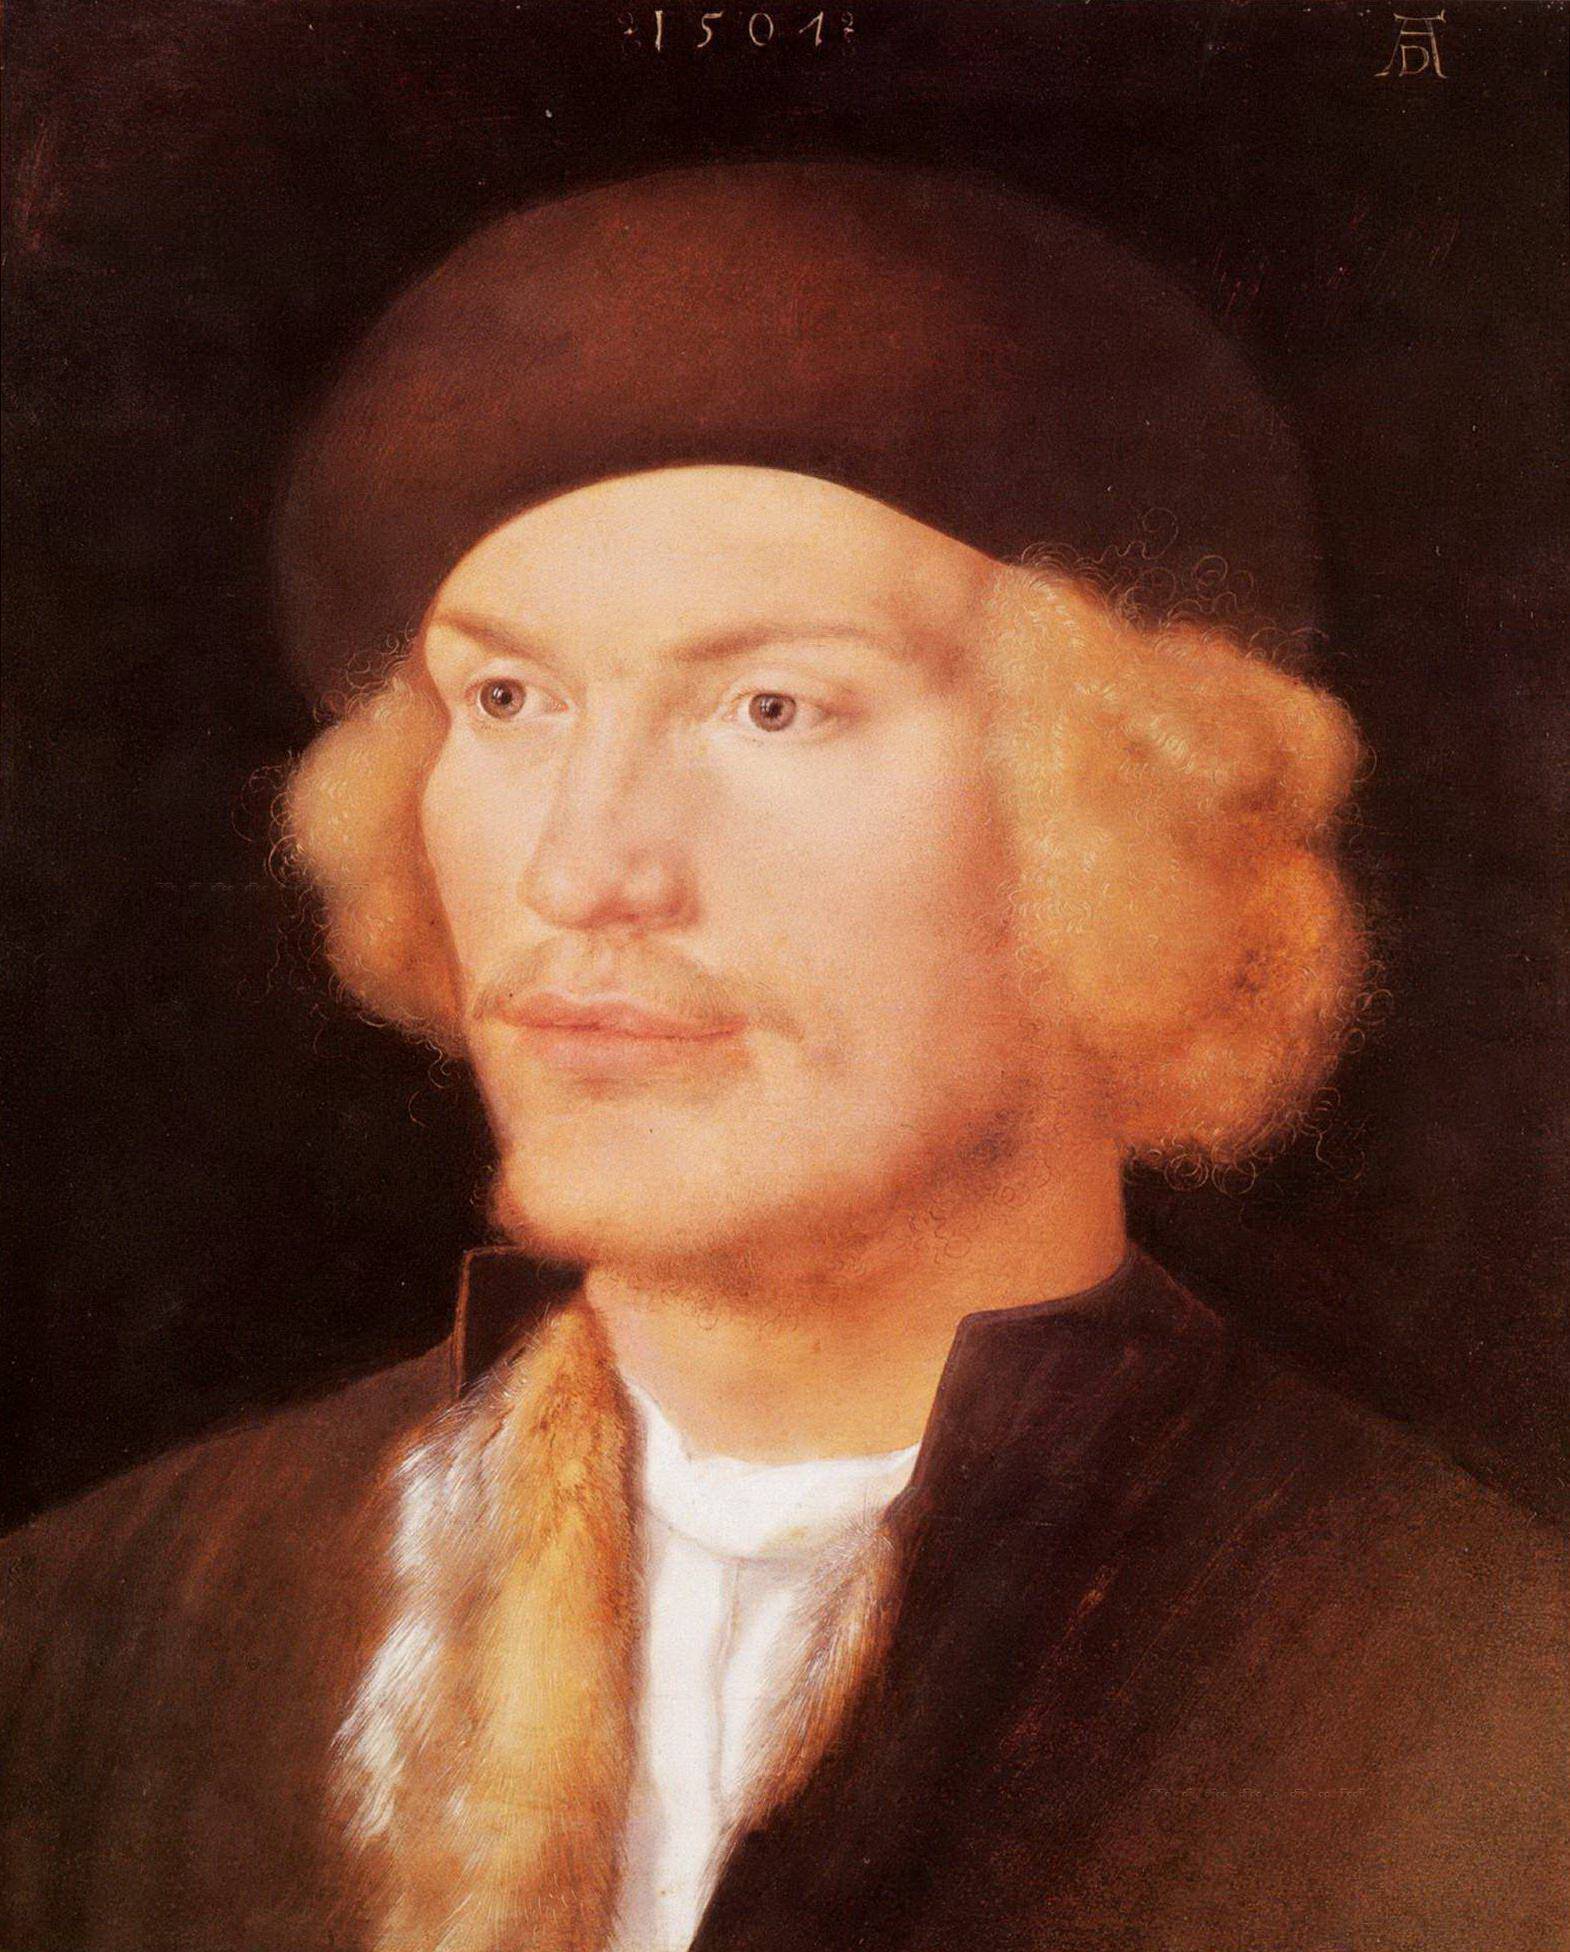 Альбрехт Дюрер. "Портрет молодого человека". 1507. Художественно-исторический музей, Вена.